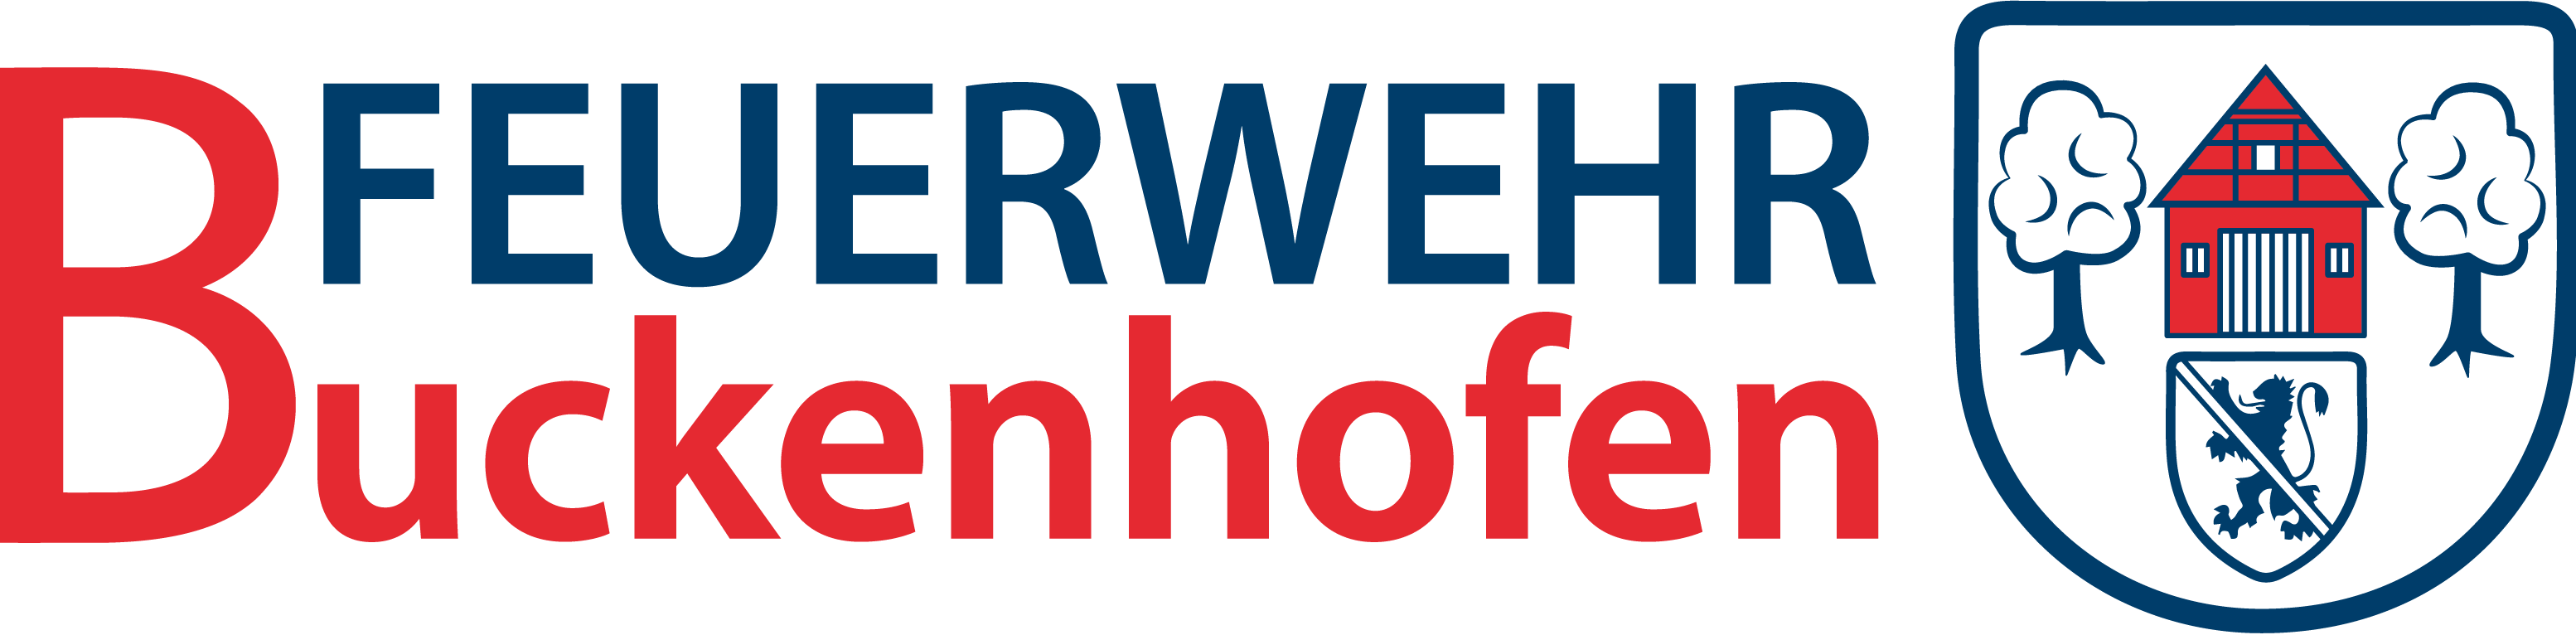 Logo FFW Buckenhofen